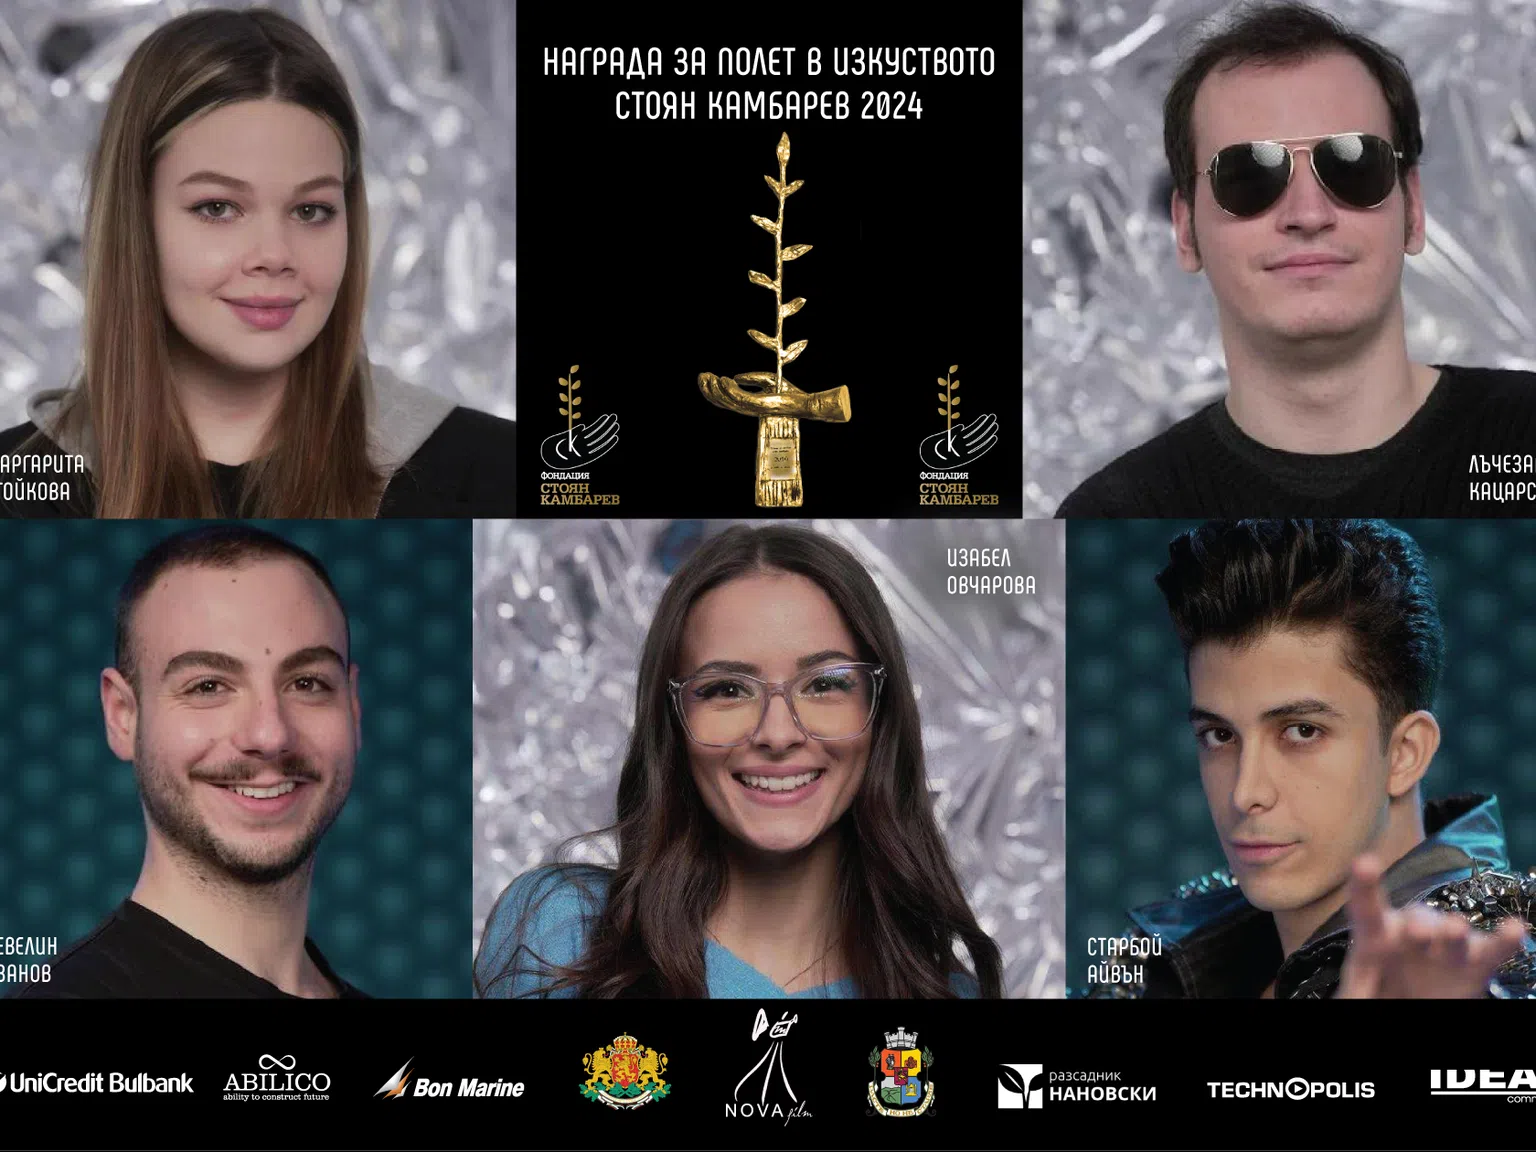 Ето го новото ято таланти номинирани за наградата за полет в изкуството "СТОЯН КАМБАРЕВ"